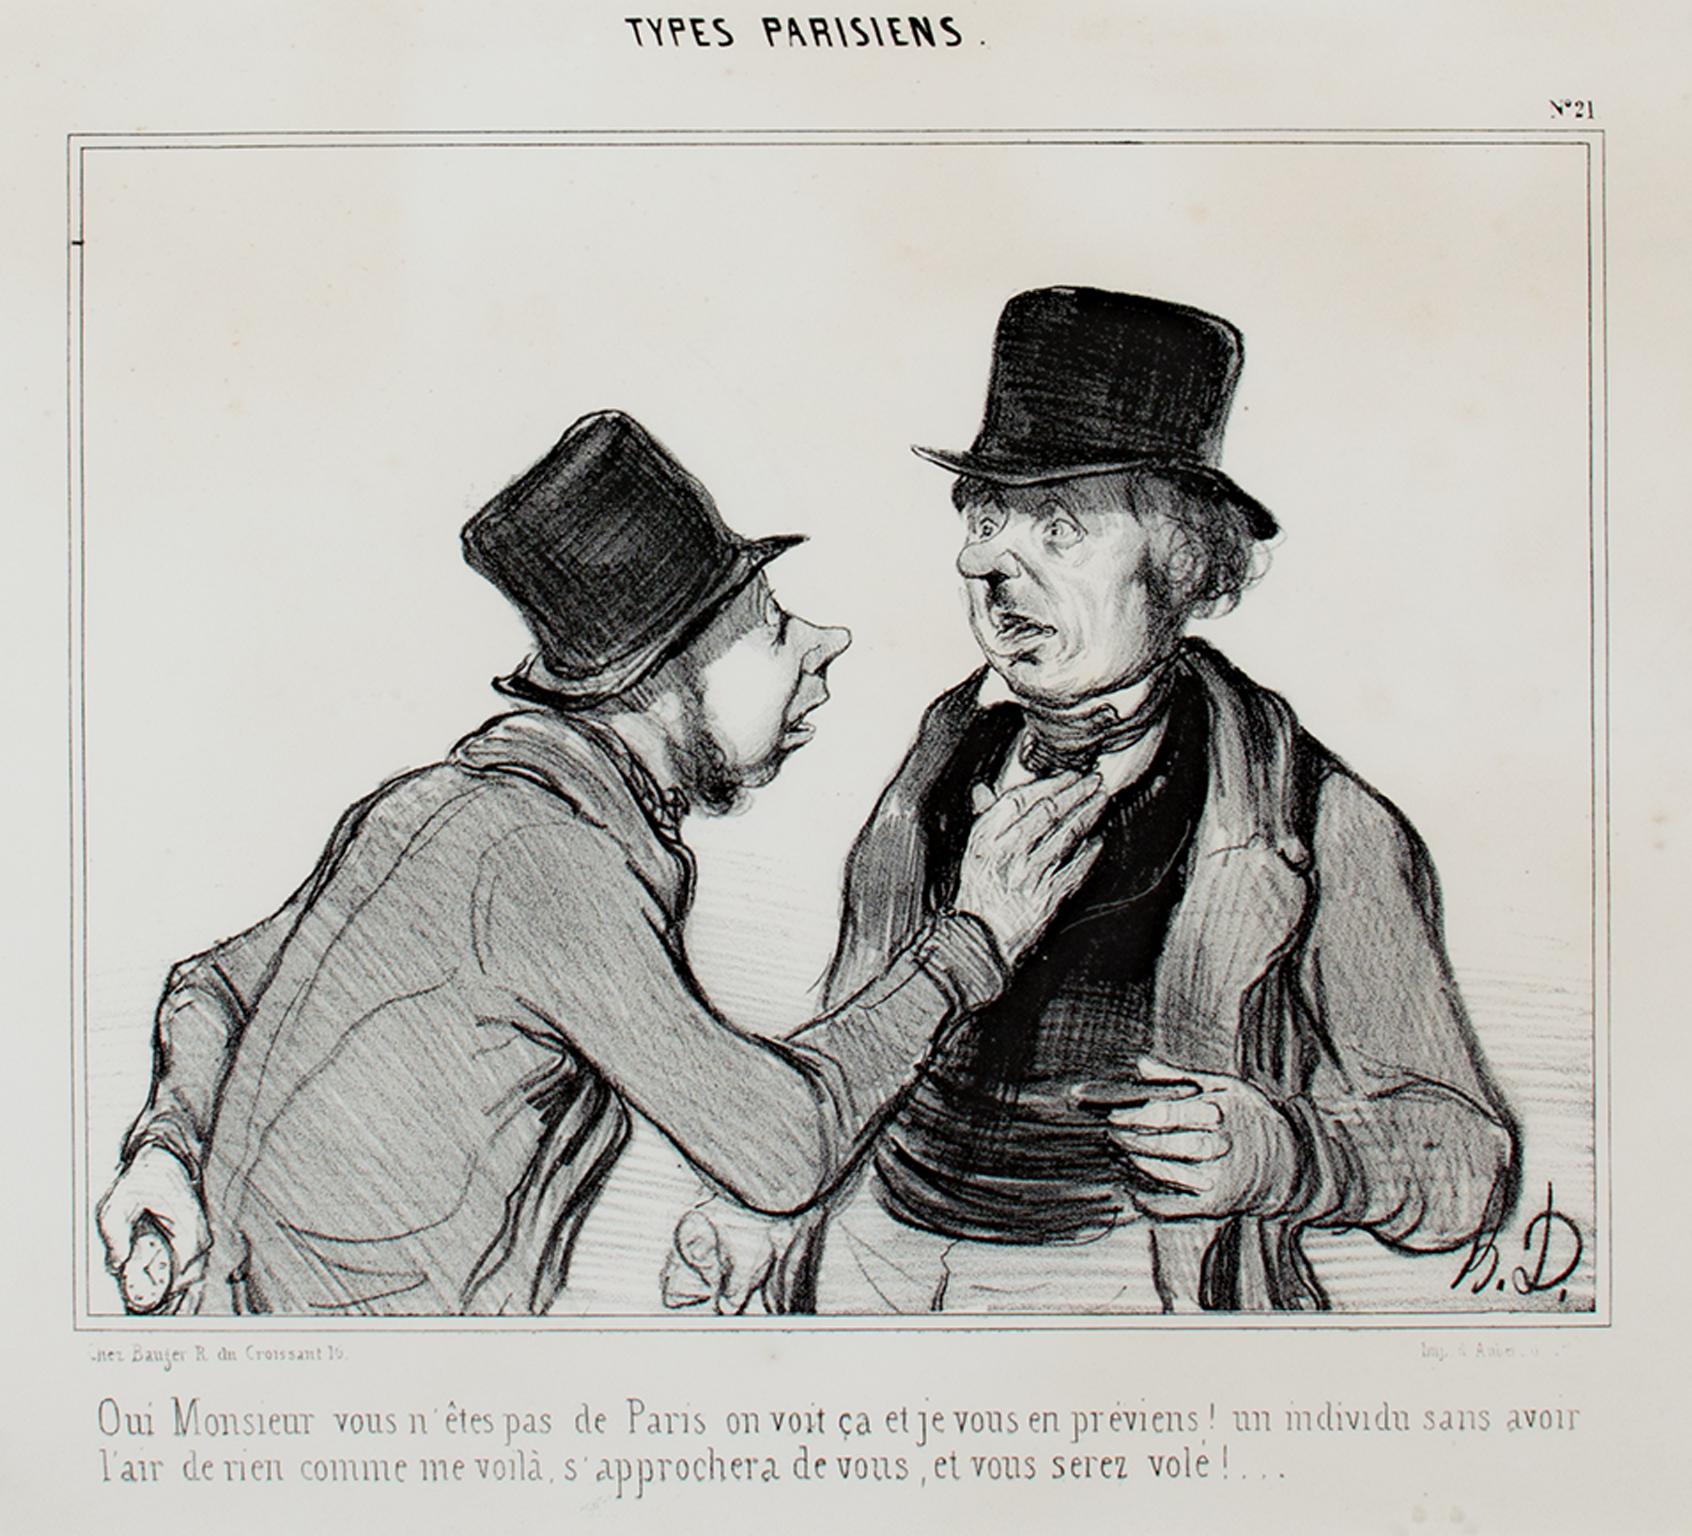 Honoré Daumier Figurative Print - "Types Praisiens L.D. 577, " original lithograph by Honore Daumier